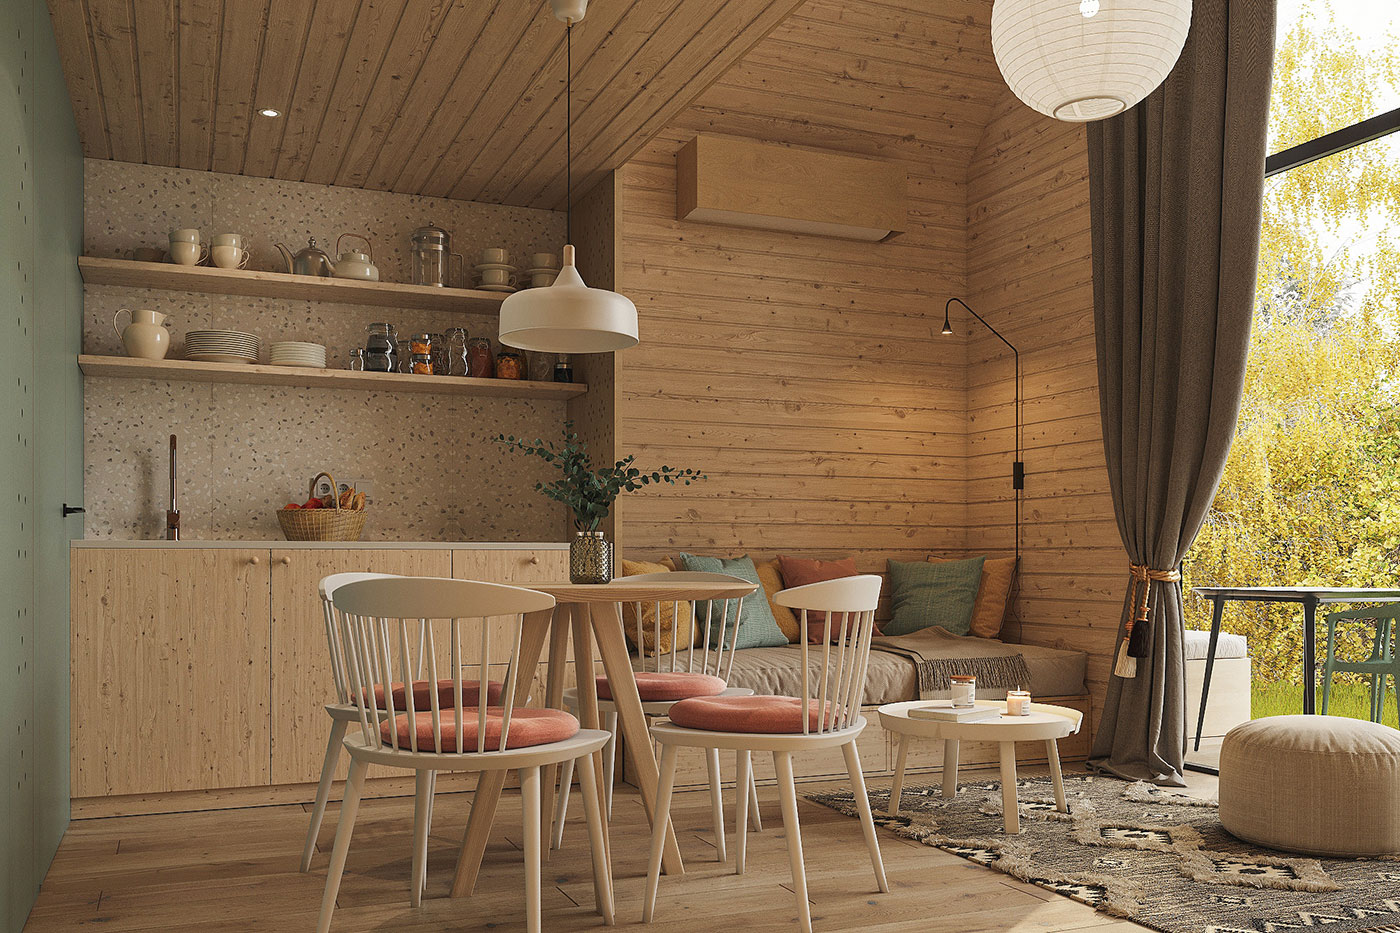 Prostornina | Soca Valley Glamping Resort, Glamping interior design | 3D visualisations: Maria Sidorova